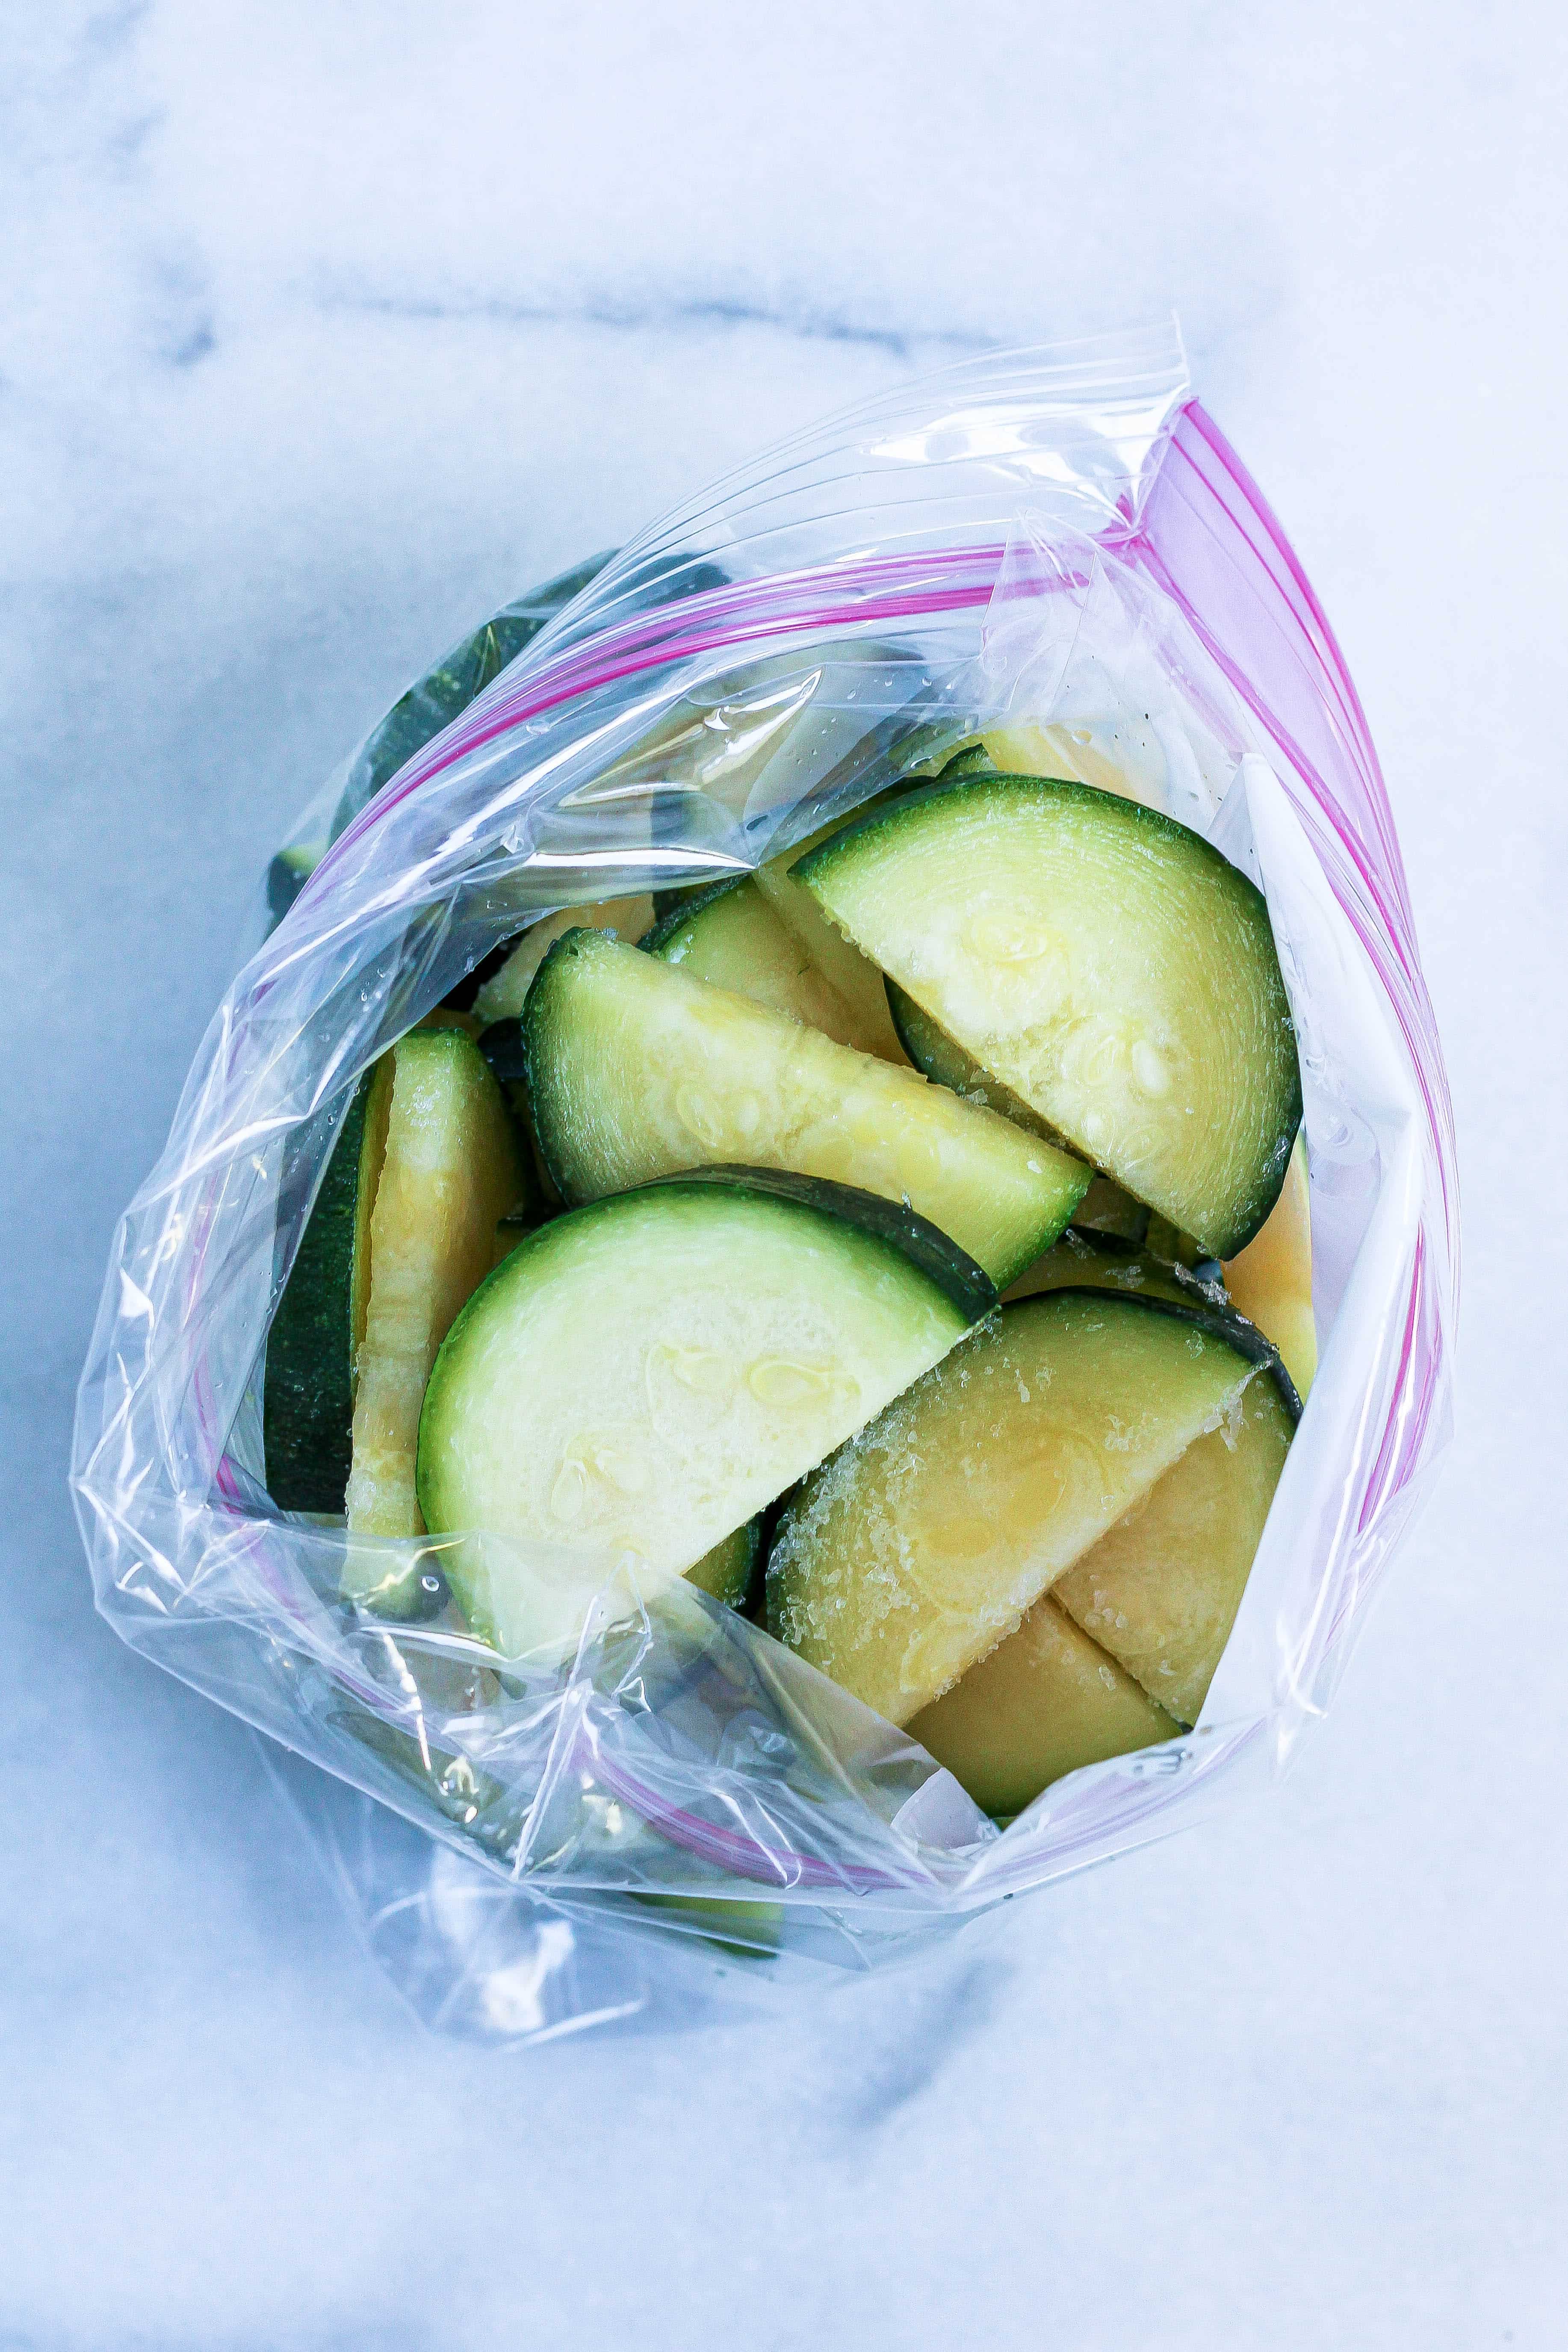 frozen zucchini in a bag